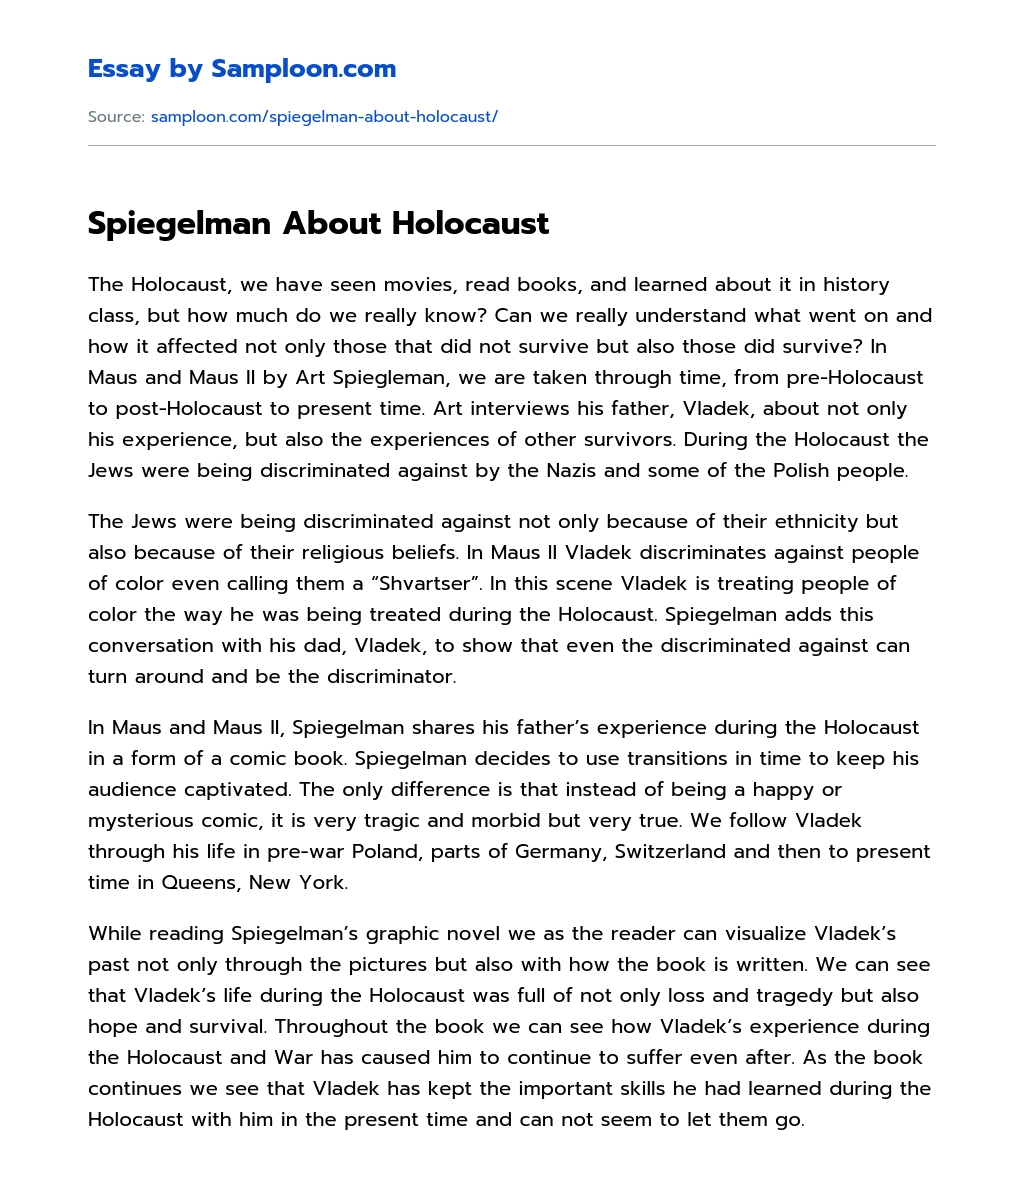 Spiegelman About Holocaust essay